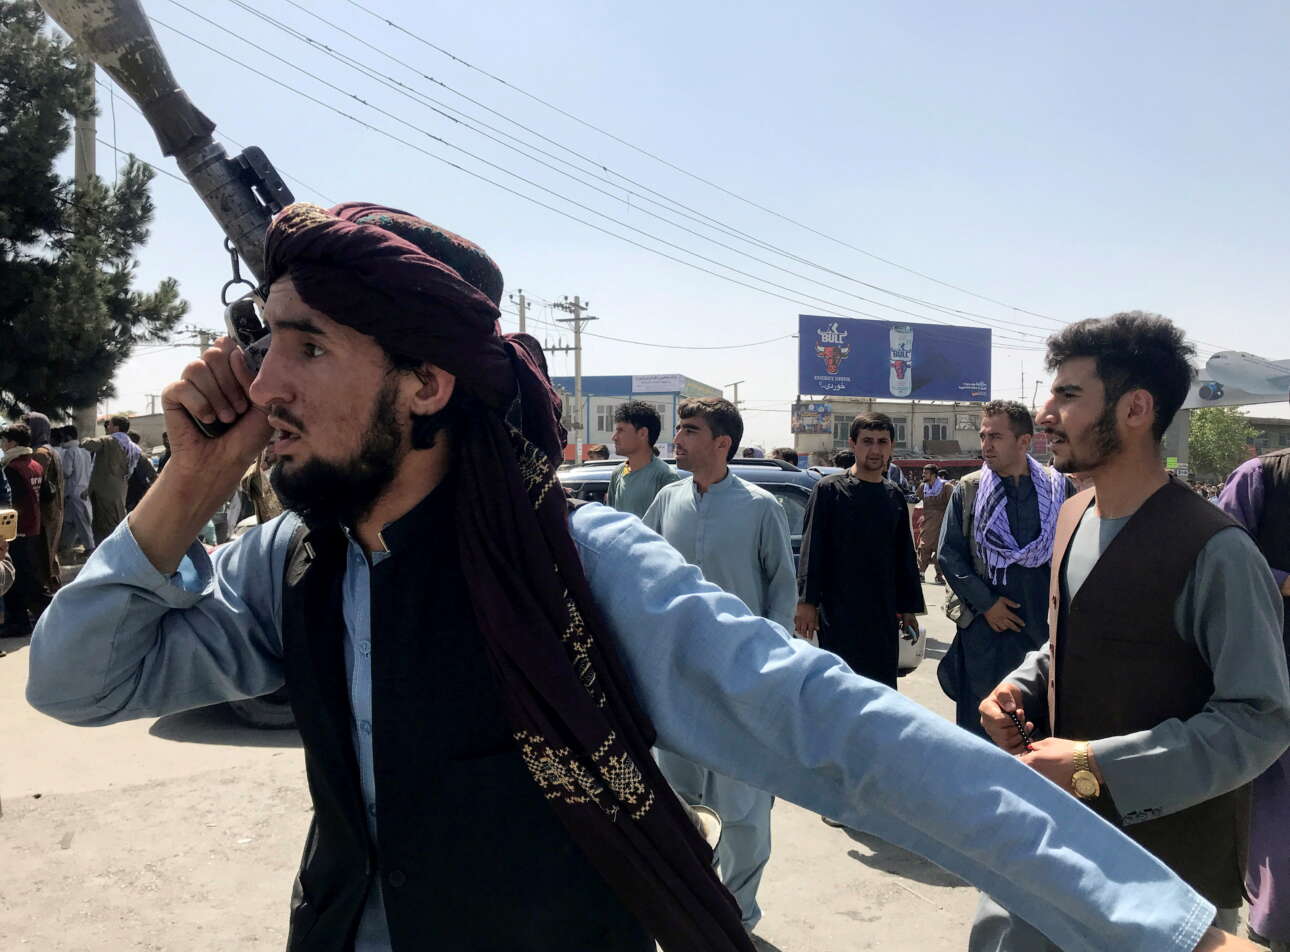 Με το αντιαρματικό στον ώμο, μέλος των Ταλιμπάν σπεύδει στο αεροδρόμιο «Χαμίντ Καρζάι» της Καμπούλ. Οι φανατικοί ισλαμιστές δεν δημιούργησαν επιπλέον πίεση στη διαδικασία εκκένωσης. Απλώς παρατηρούσαν το χάος που δημιούργησαν με την εισβολή τους στην αφγανική πρωτεύουσα